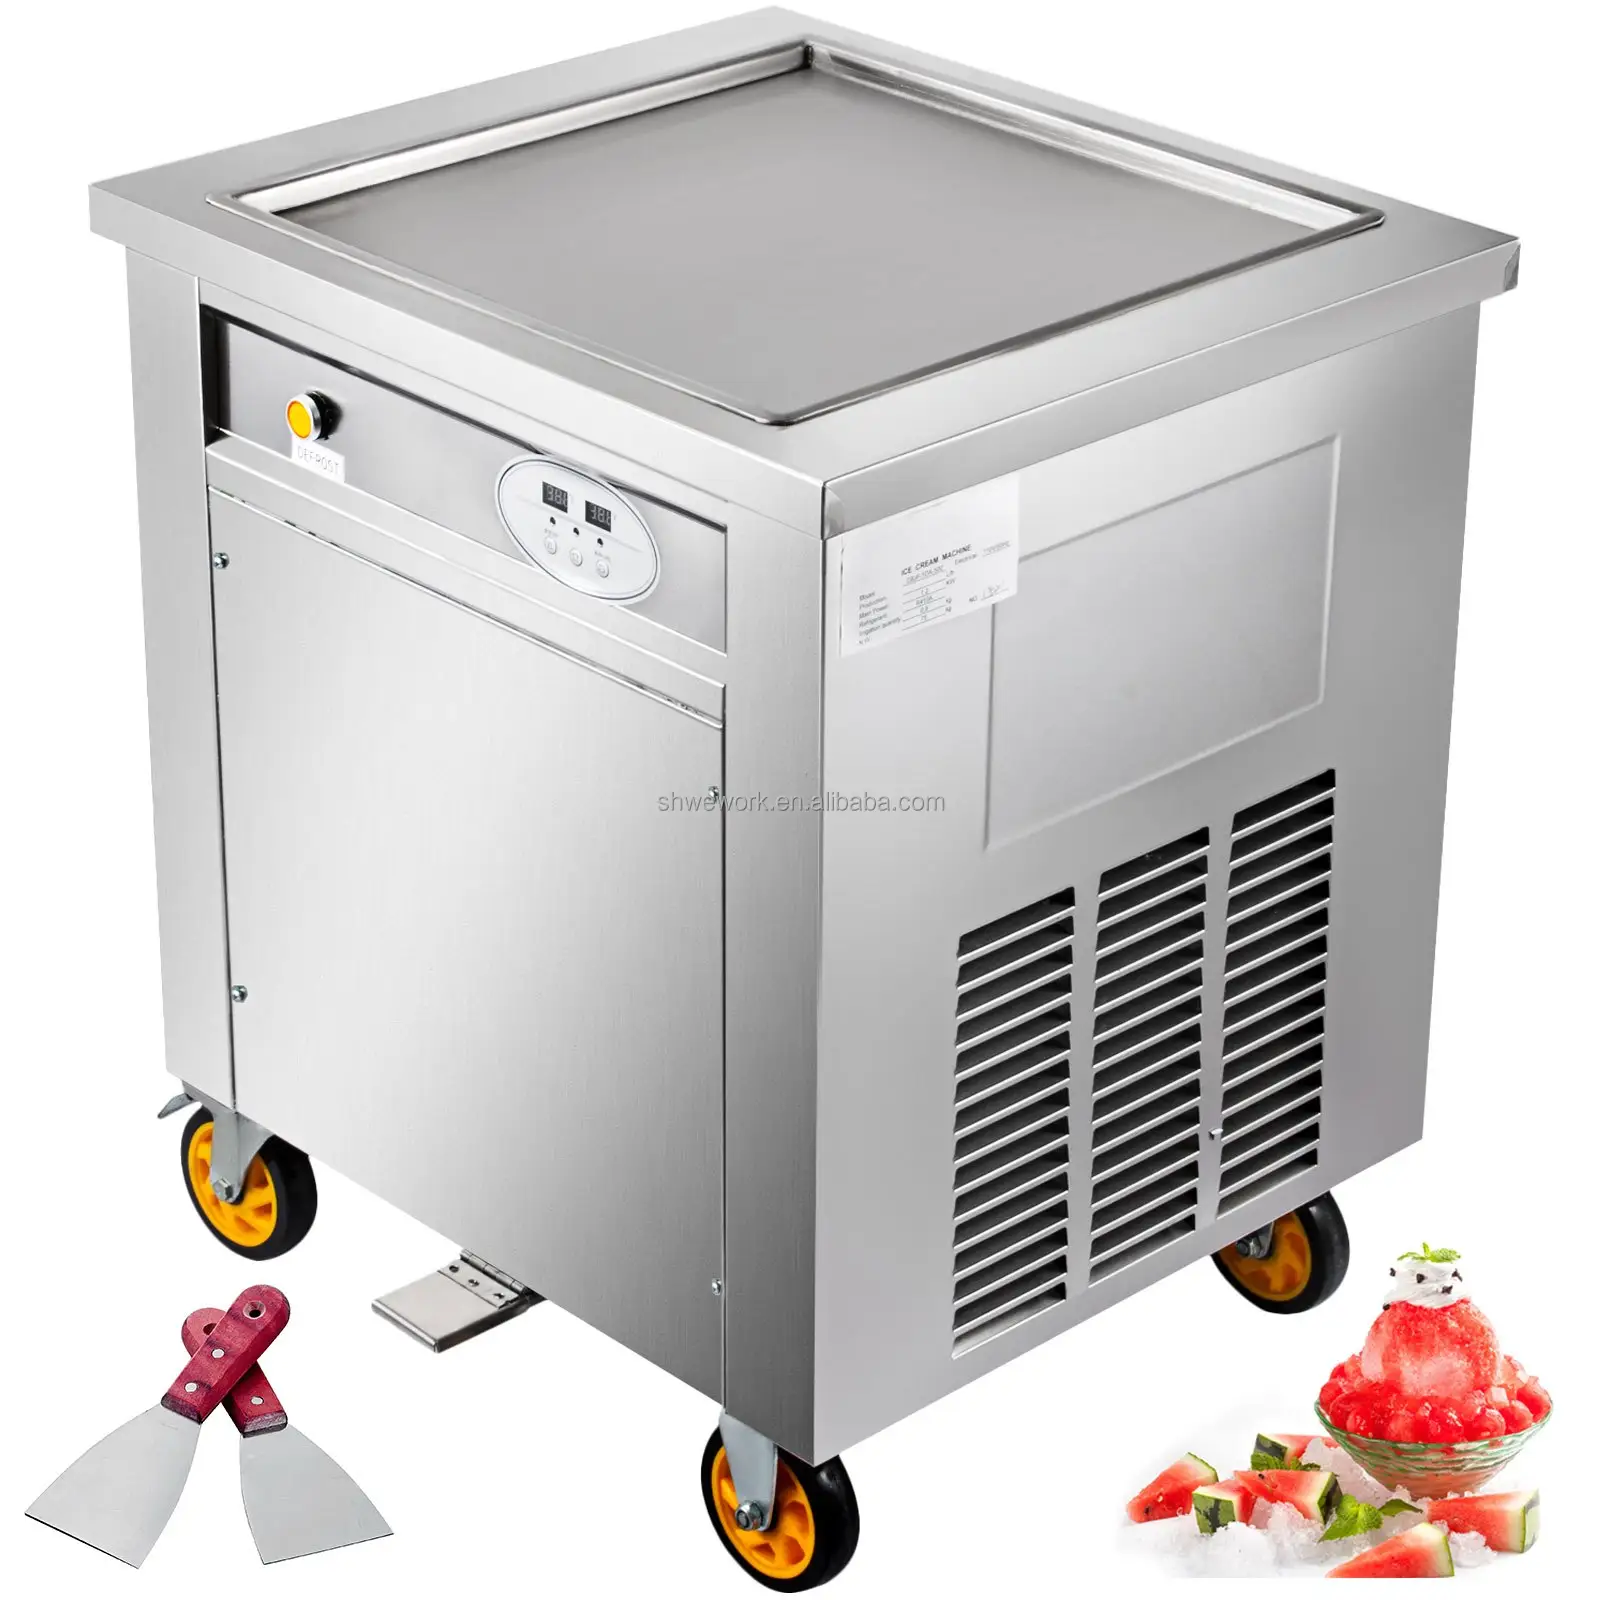 Ticari dondurma makinesi 1350W dondurma rulo makinesi inç kare tava ile karıştırılmış yoğurt krem makinesi 19.7